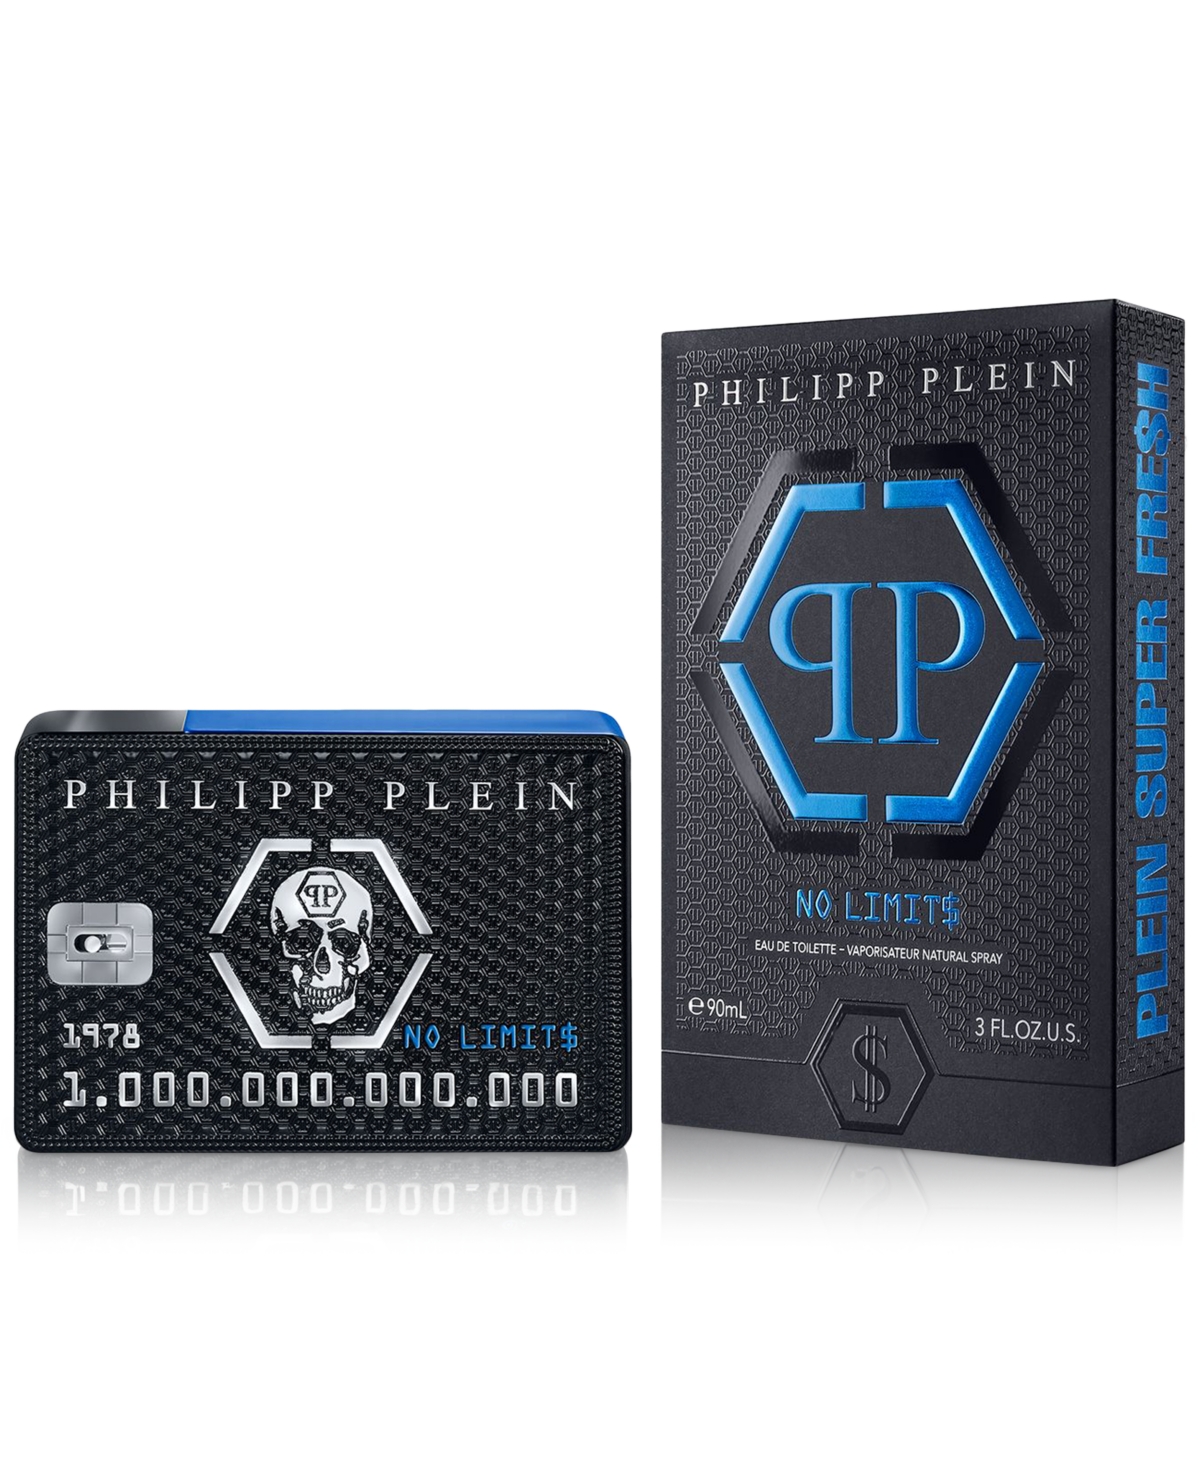 Philipp Plein Men's No Limit$ Plein Super Fre$h Eau De Toilette Spray, 3 Oz.